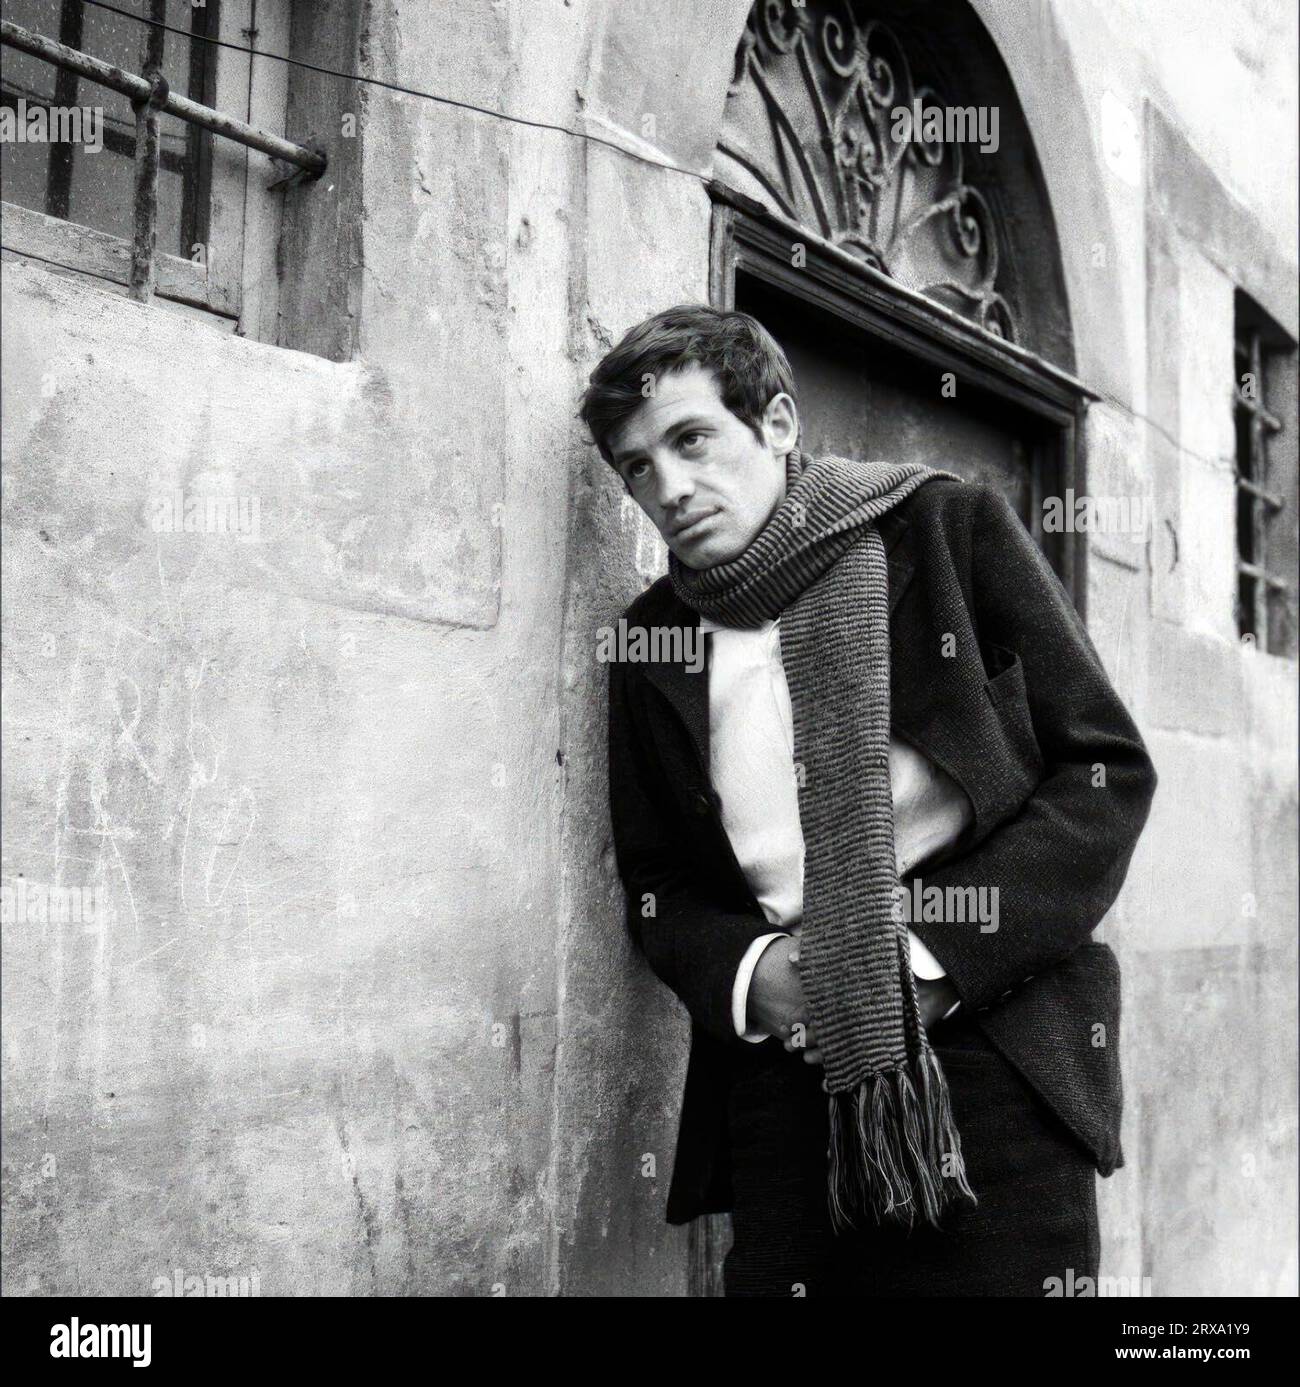 JEAN-PAUL BELMONDO in THE LOVEMAKERS (1961) -Original title: LA VIACCIA-, directed by MAURO BOLOGNINI. Credit: ARCO FILMS / Album Stock Photo